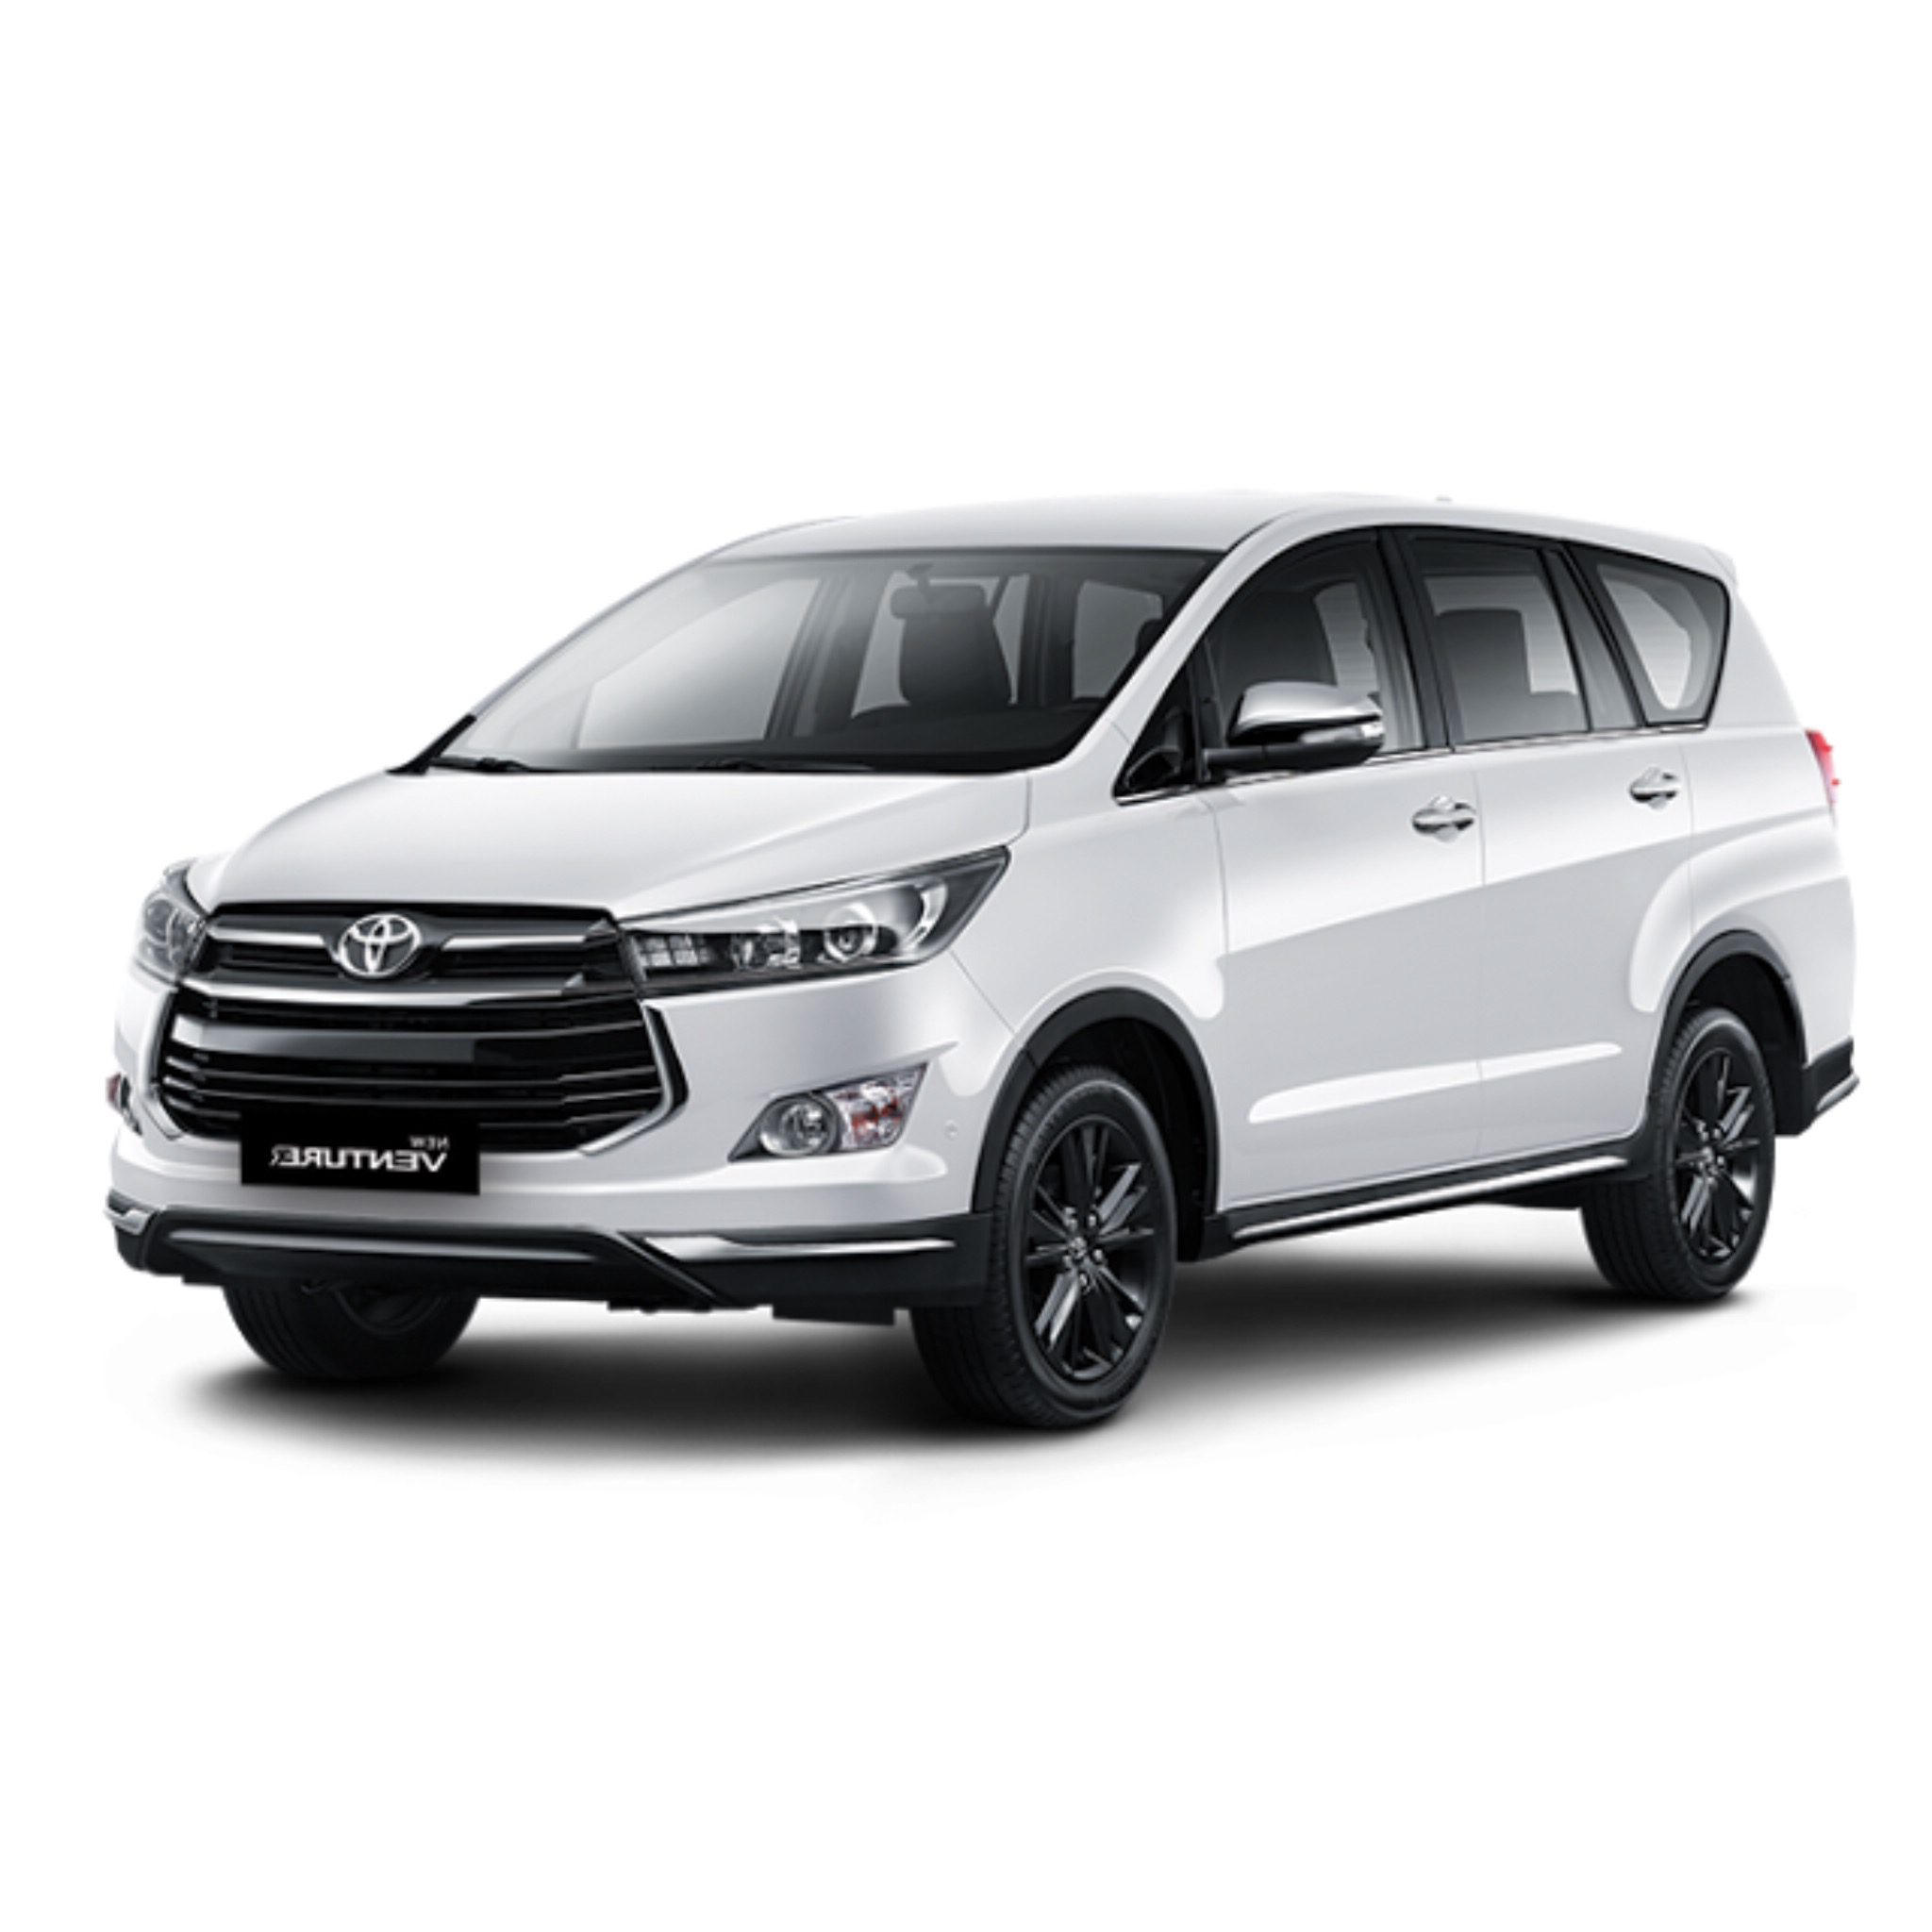 All New Kijang Innova Toyota Jogja Dealer Resmi Nasmoco Toyota Yogyakarta